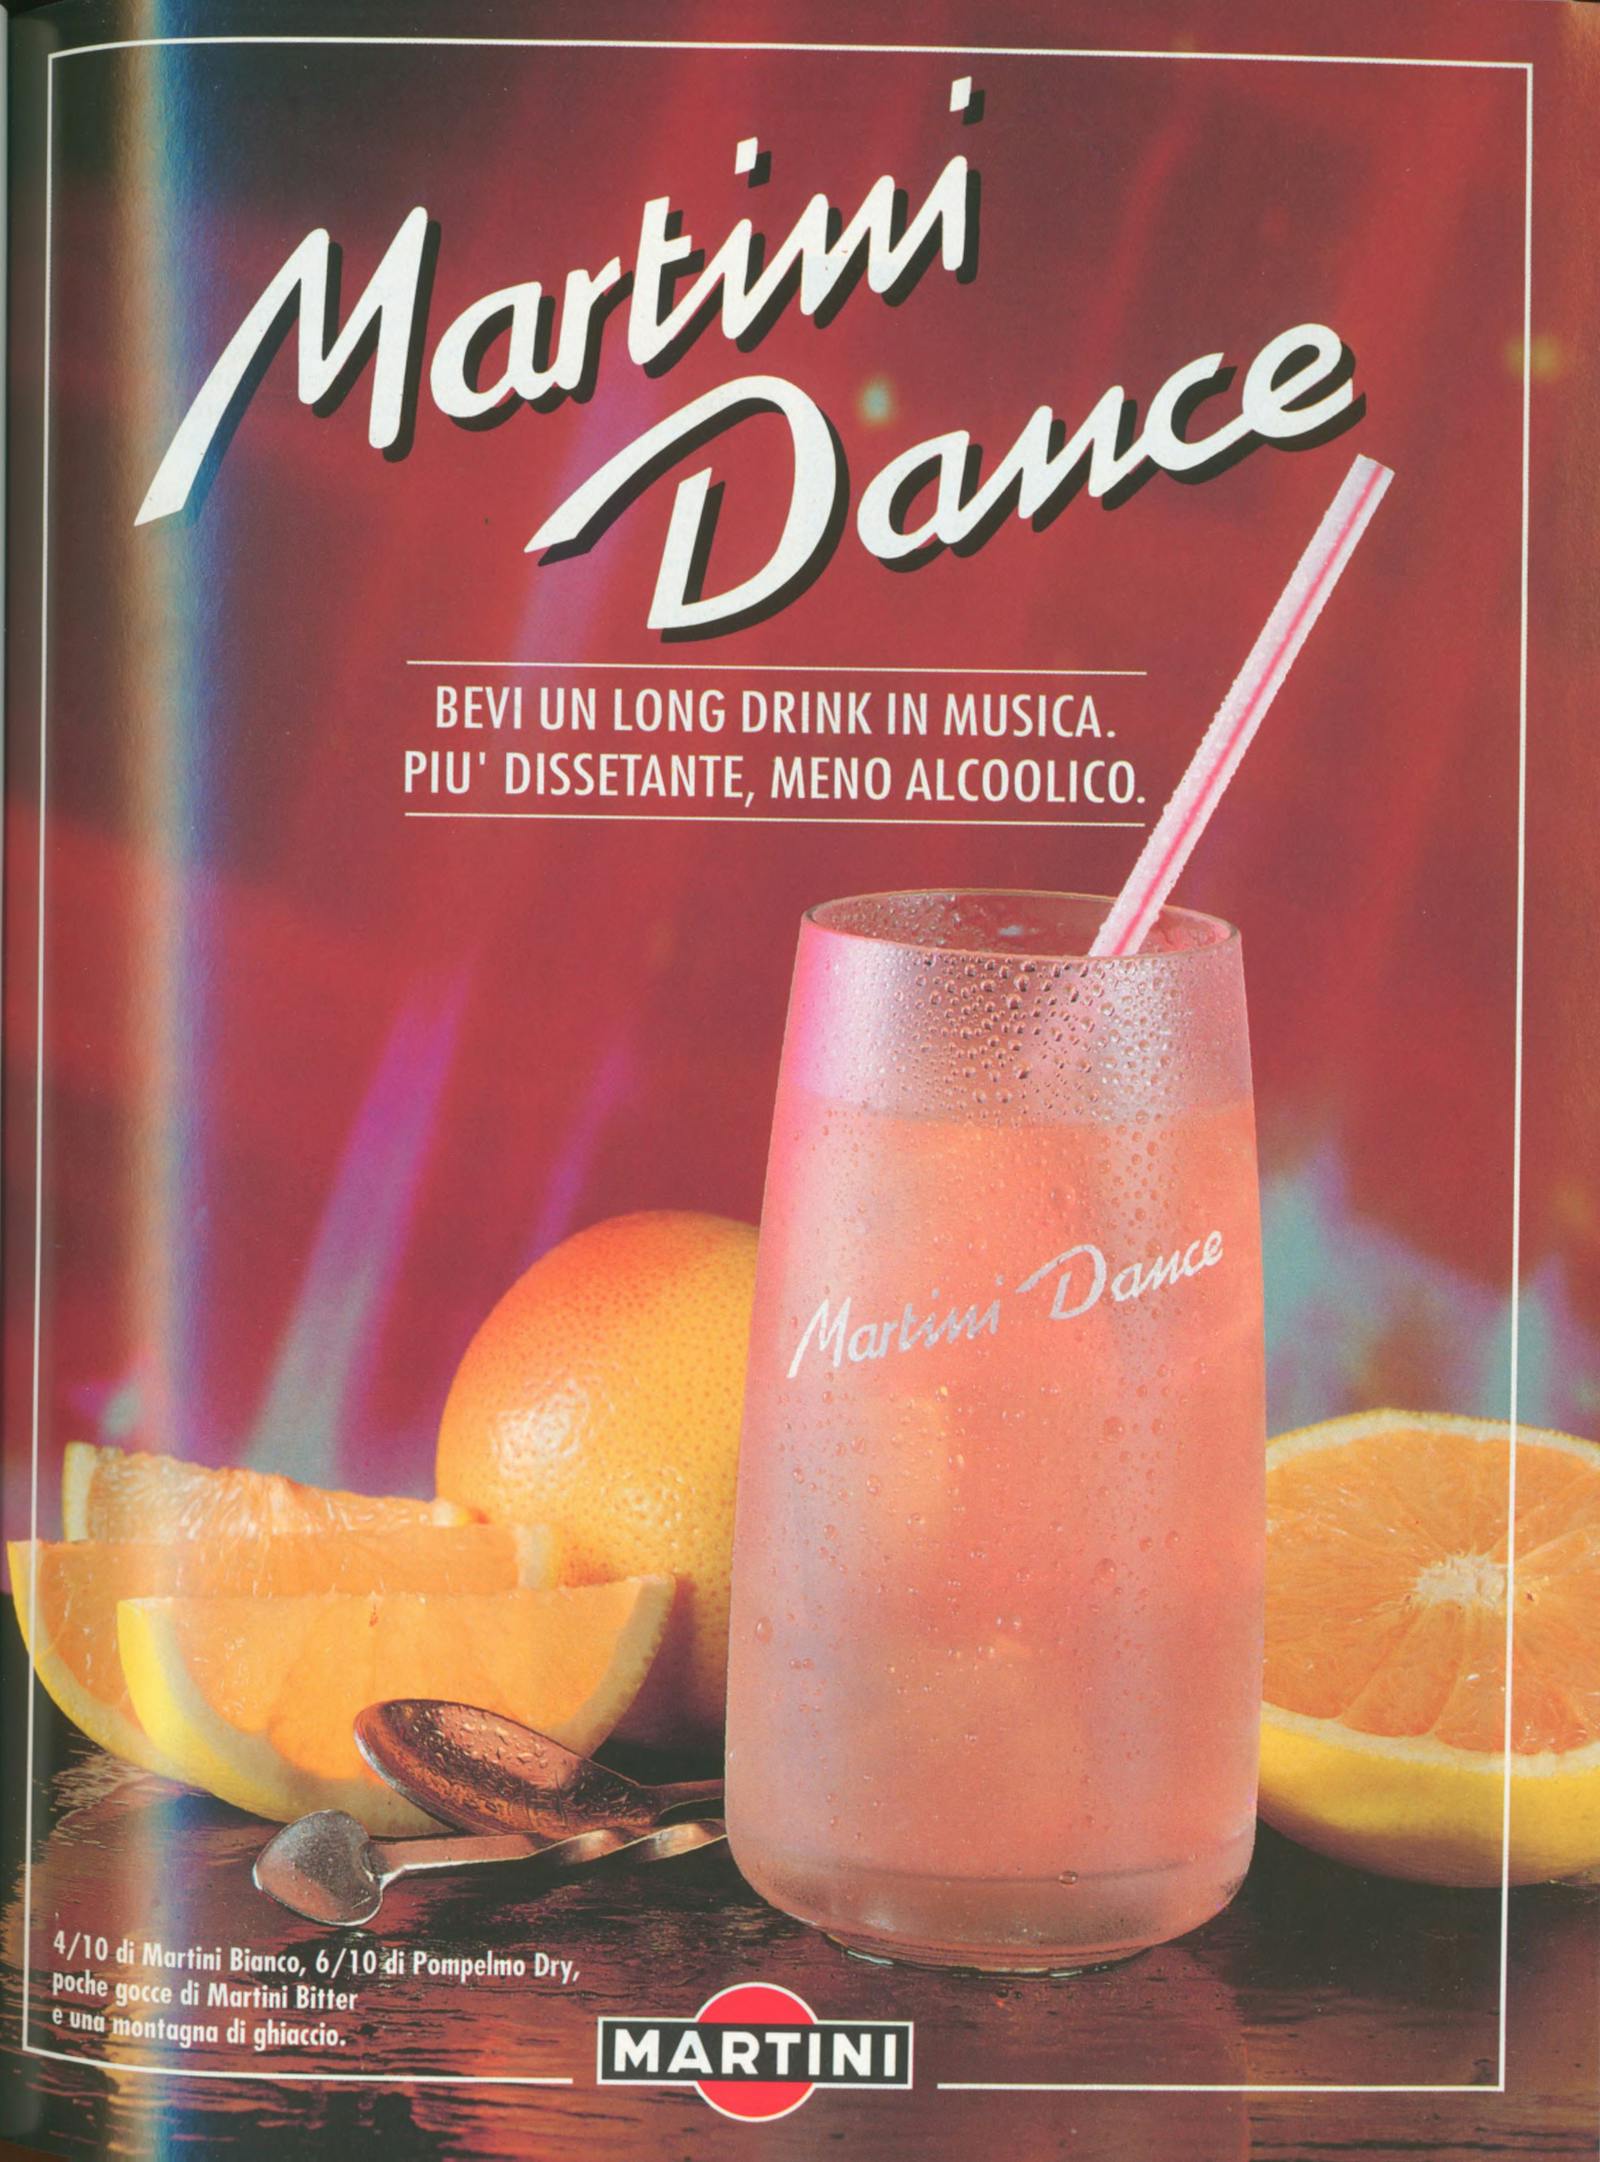 Pubblicità Martini: Martini Dance